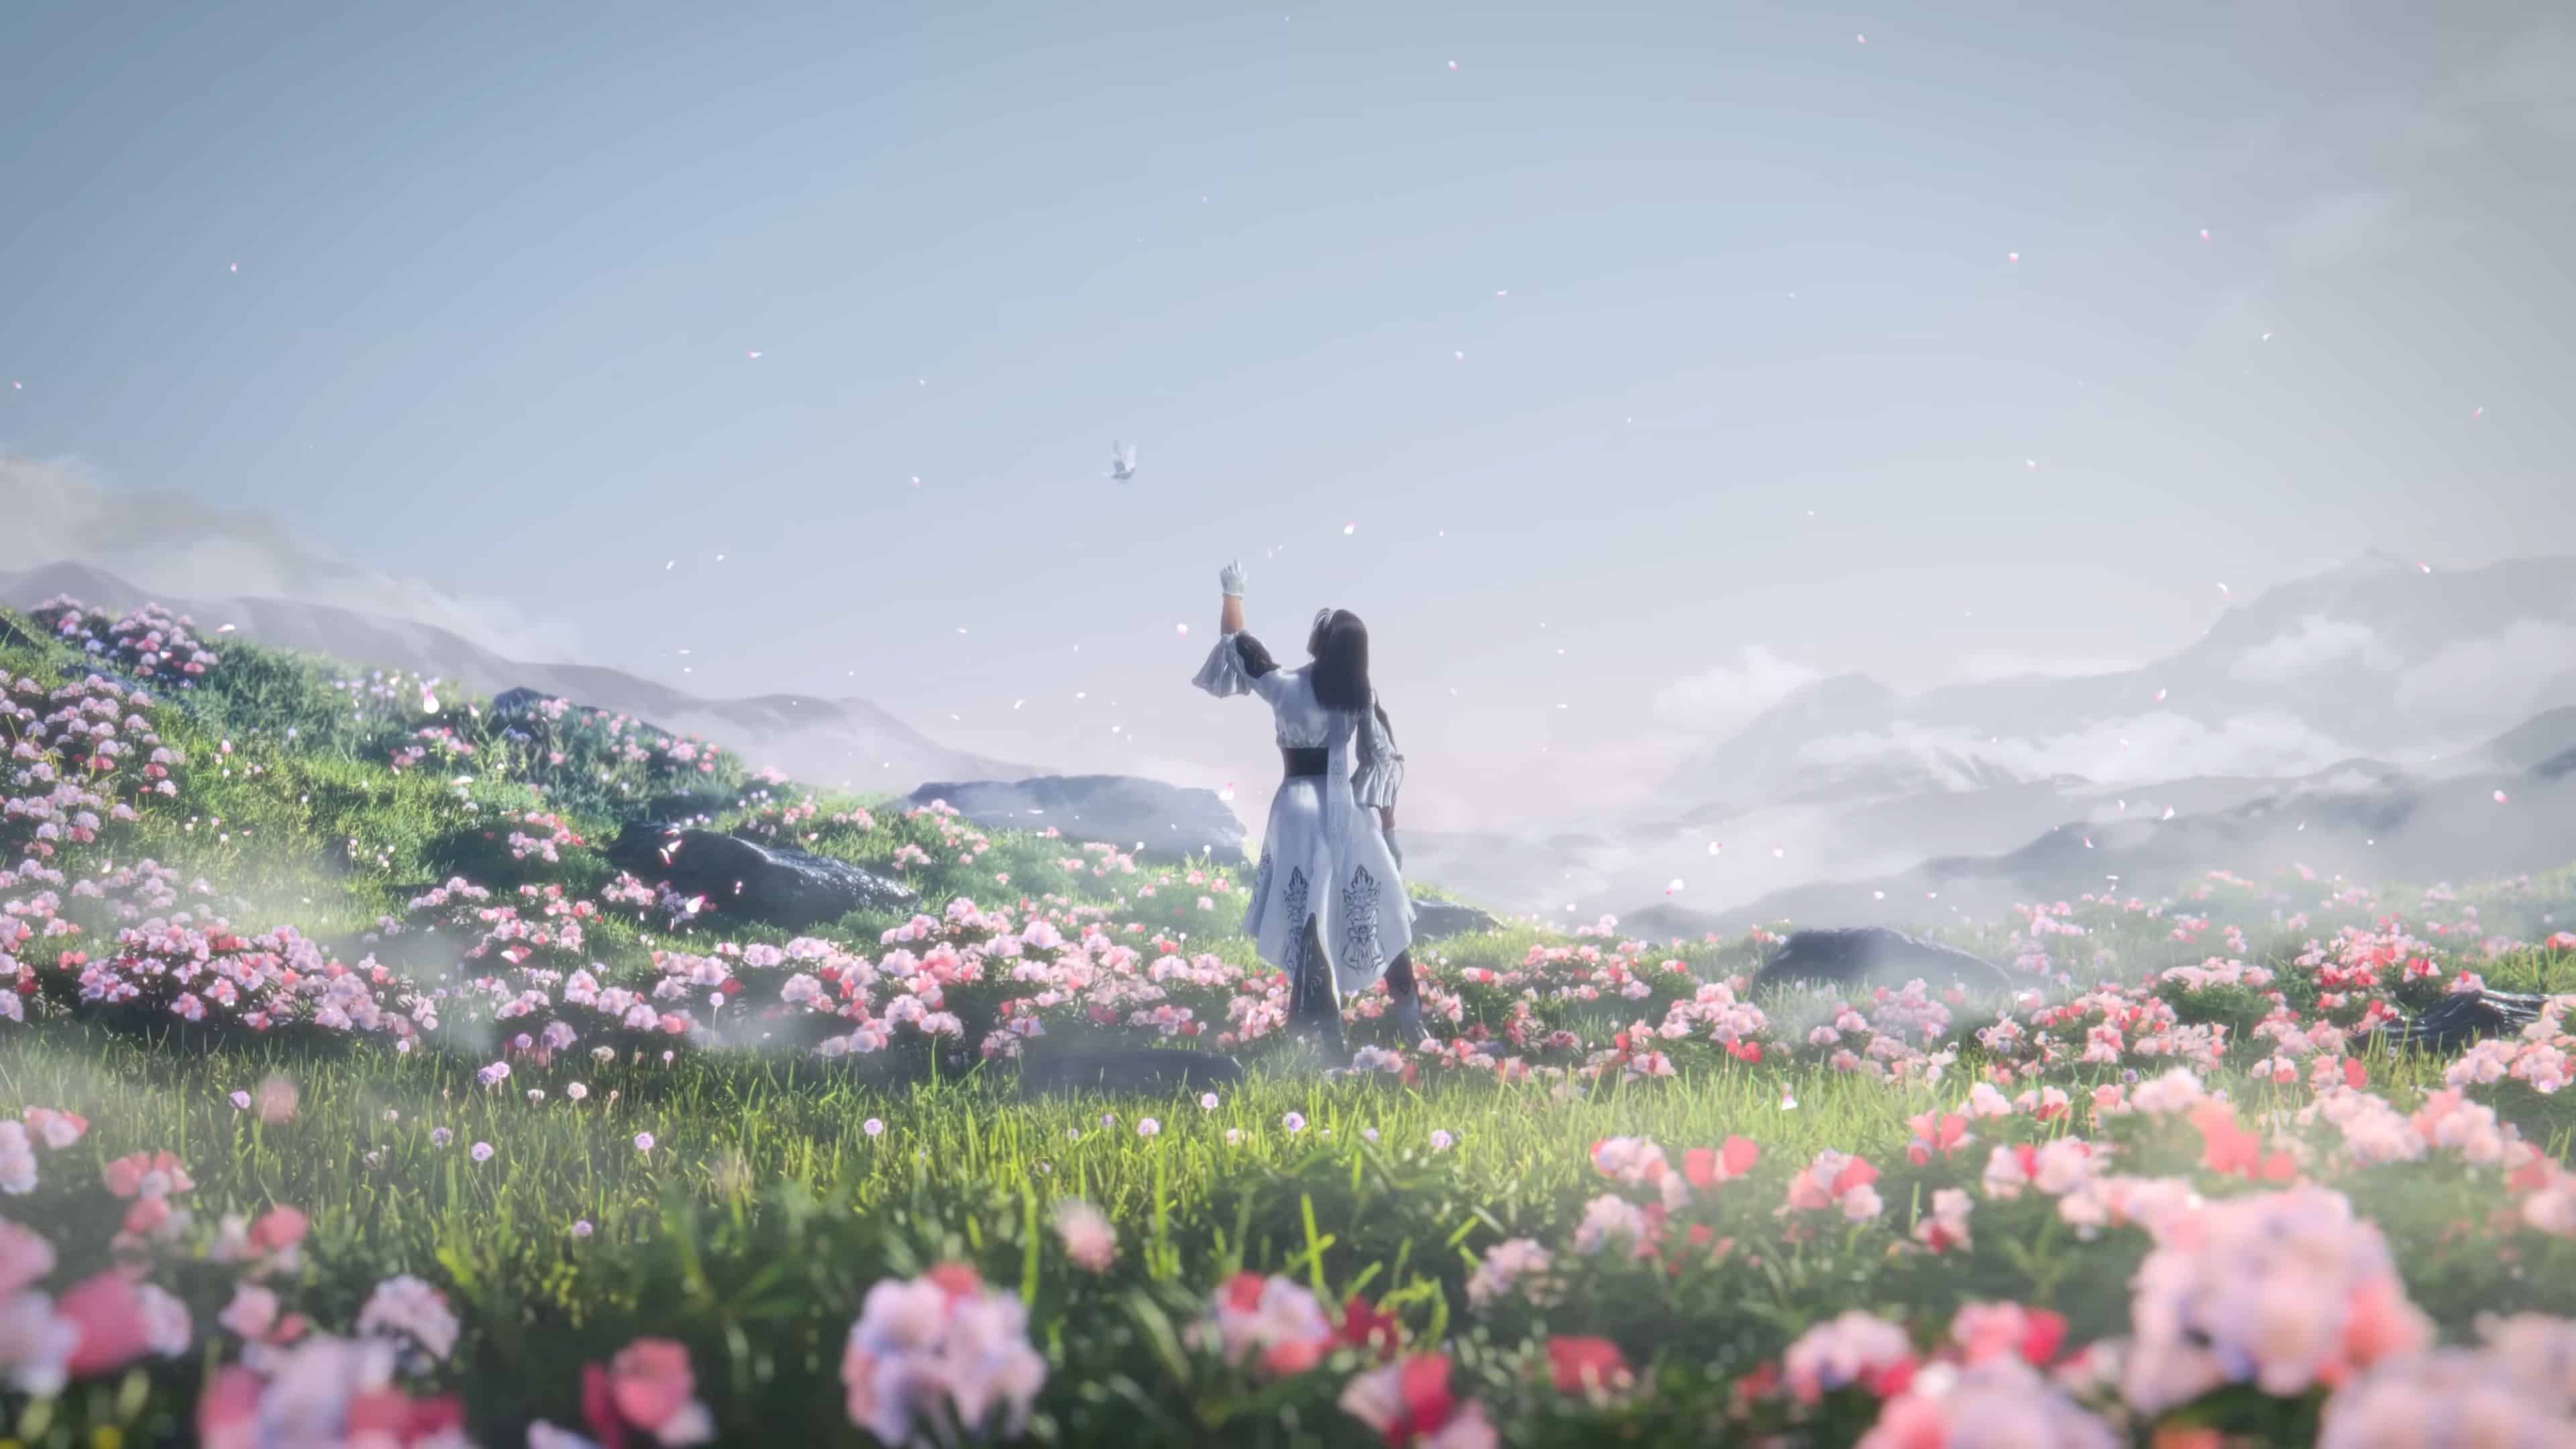 Tekken 8 preload: Jun Kazama standing in a field filled with pink flowers.